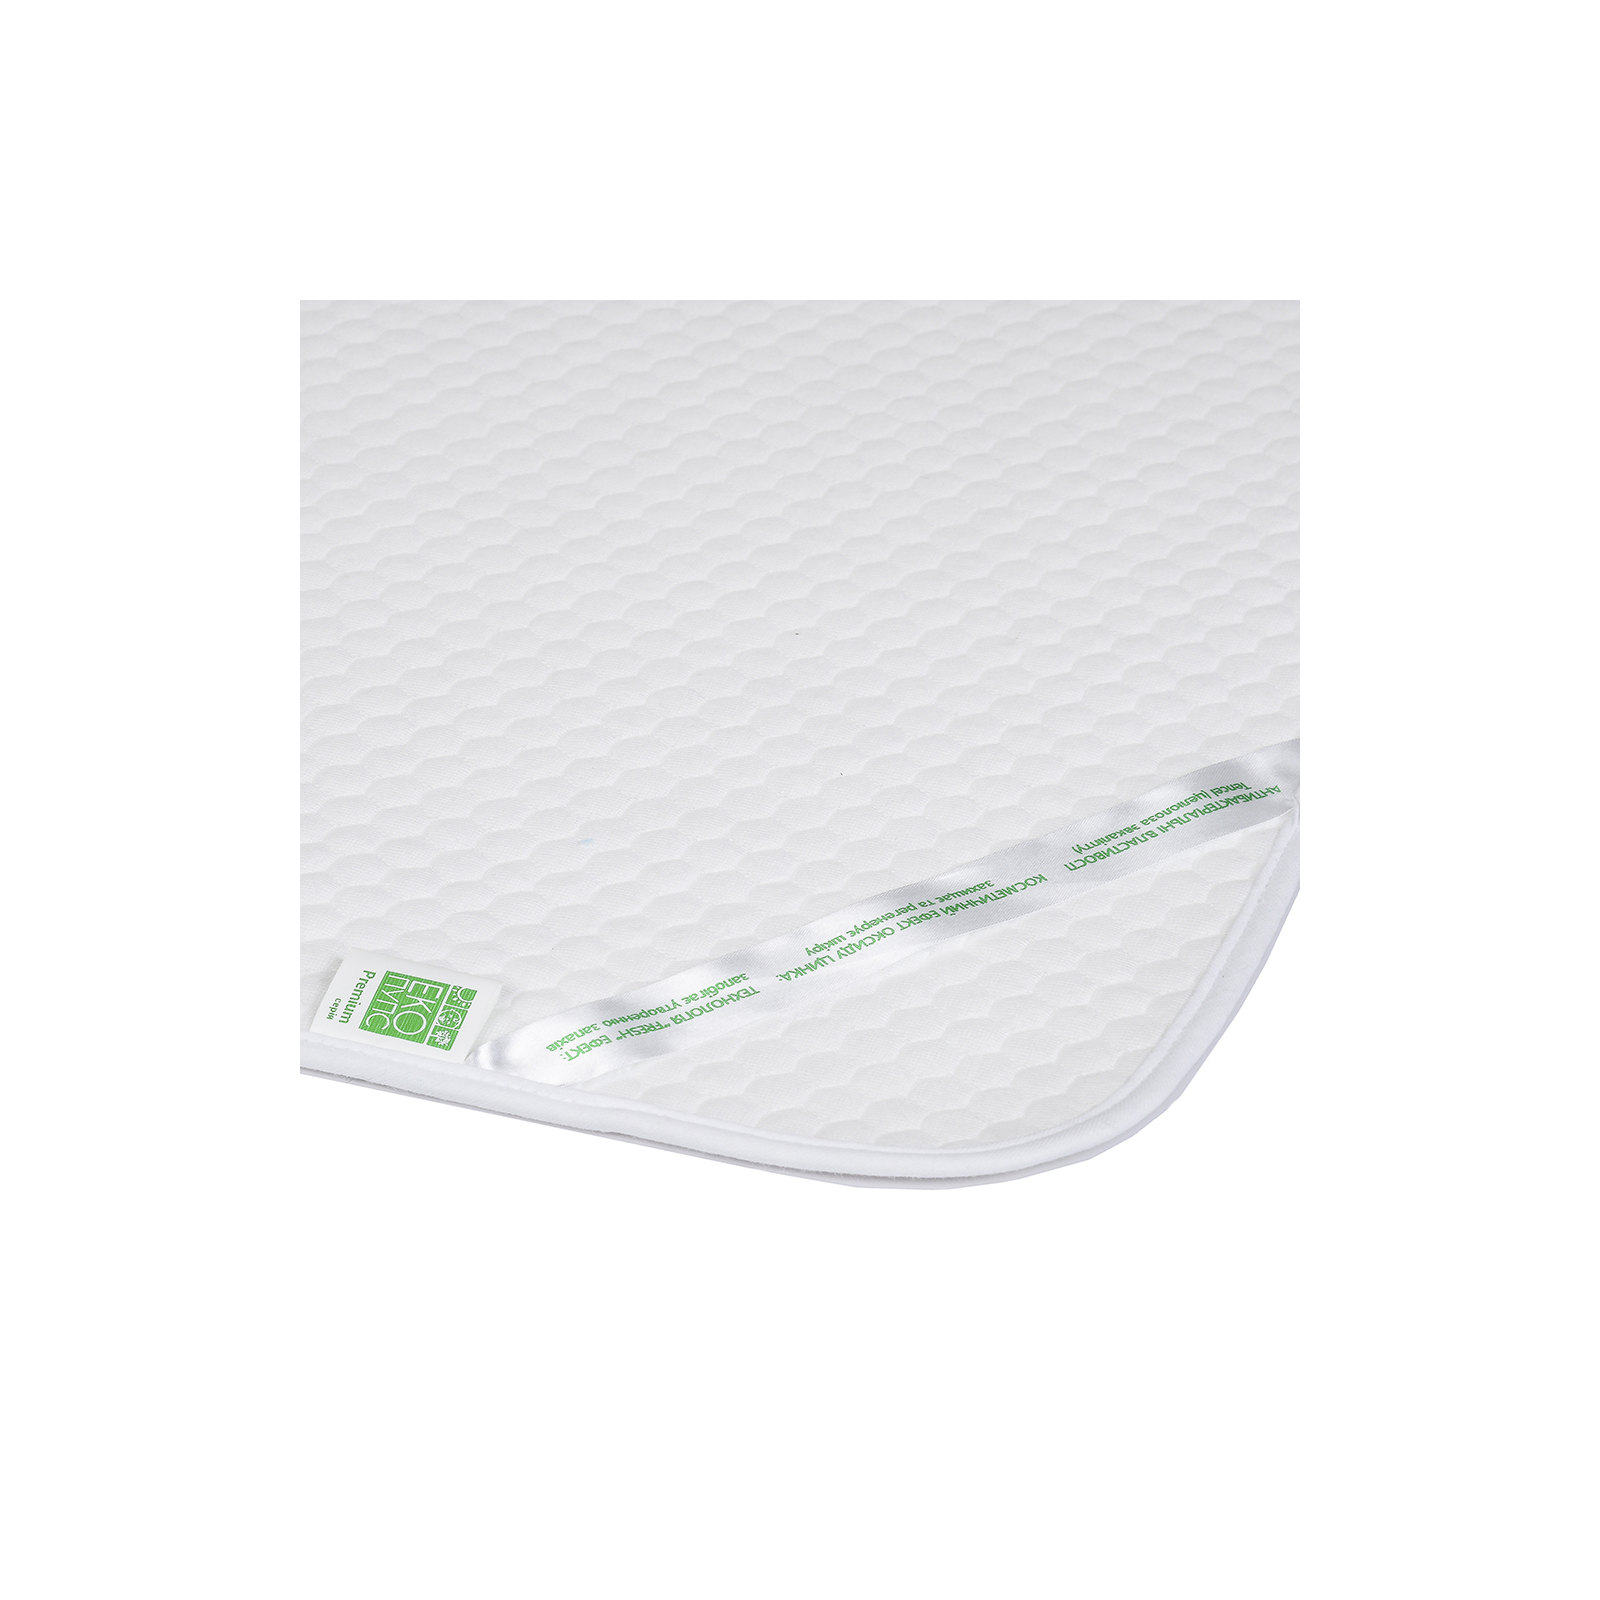 Пеленки для младенцев Еко Пупс Soft Touch Premium поглотительная и непромокаемая 65 х 90 см melang (EPG07W-6590m) изображение 5